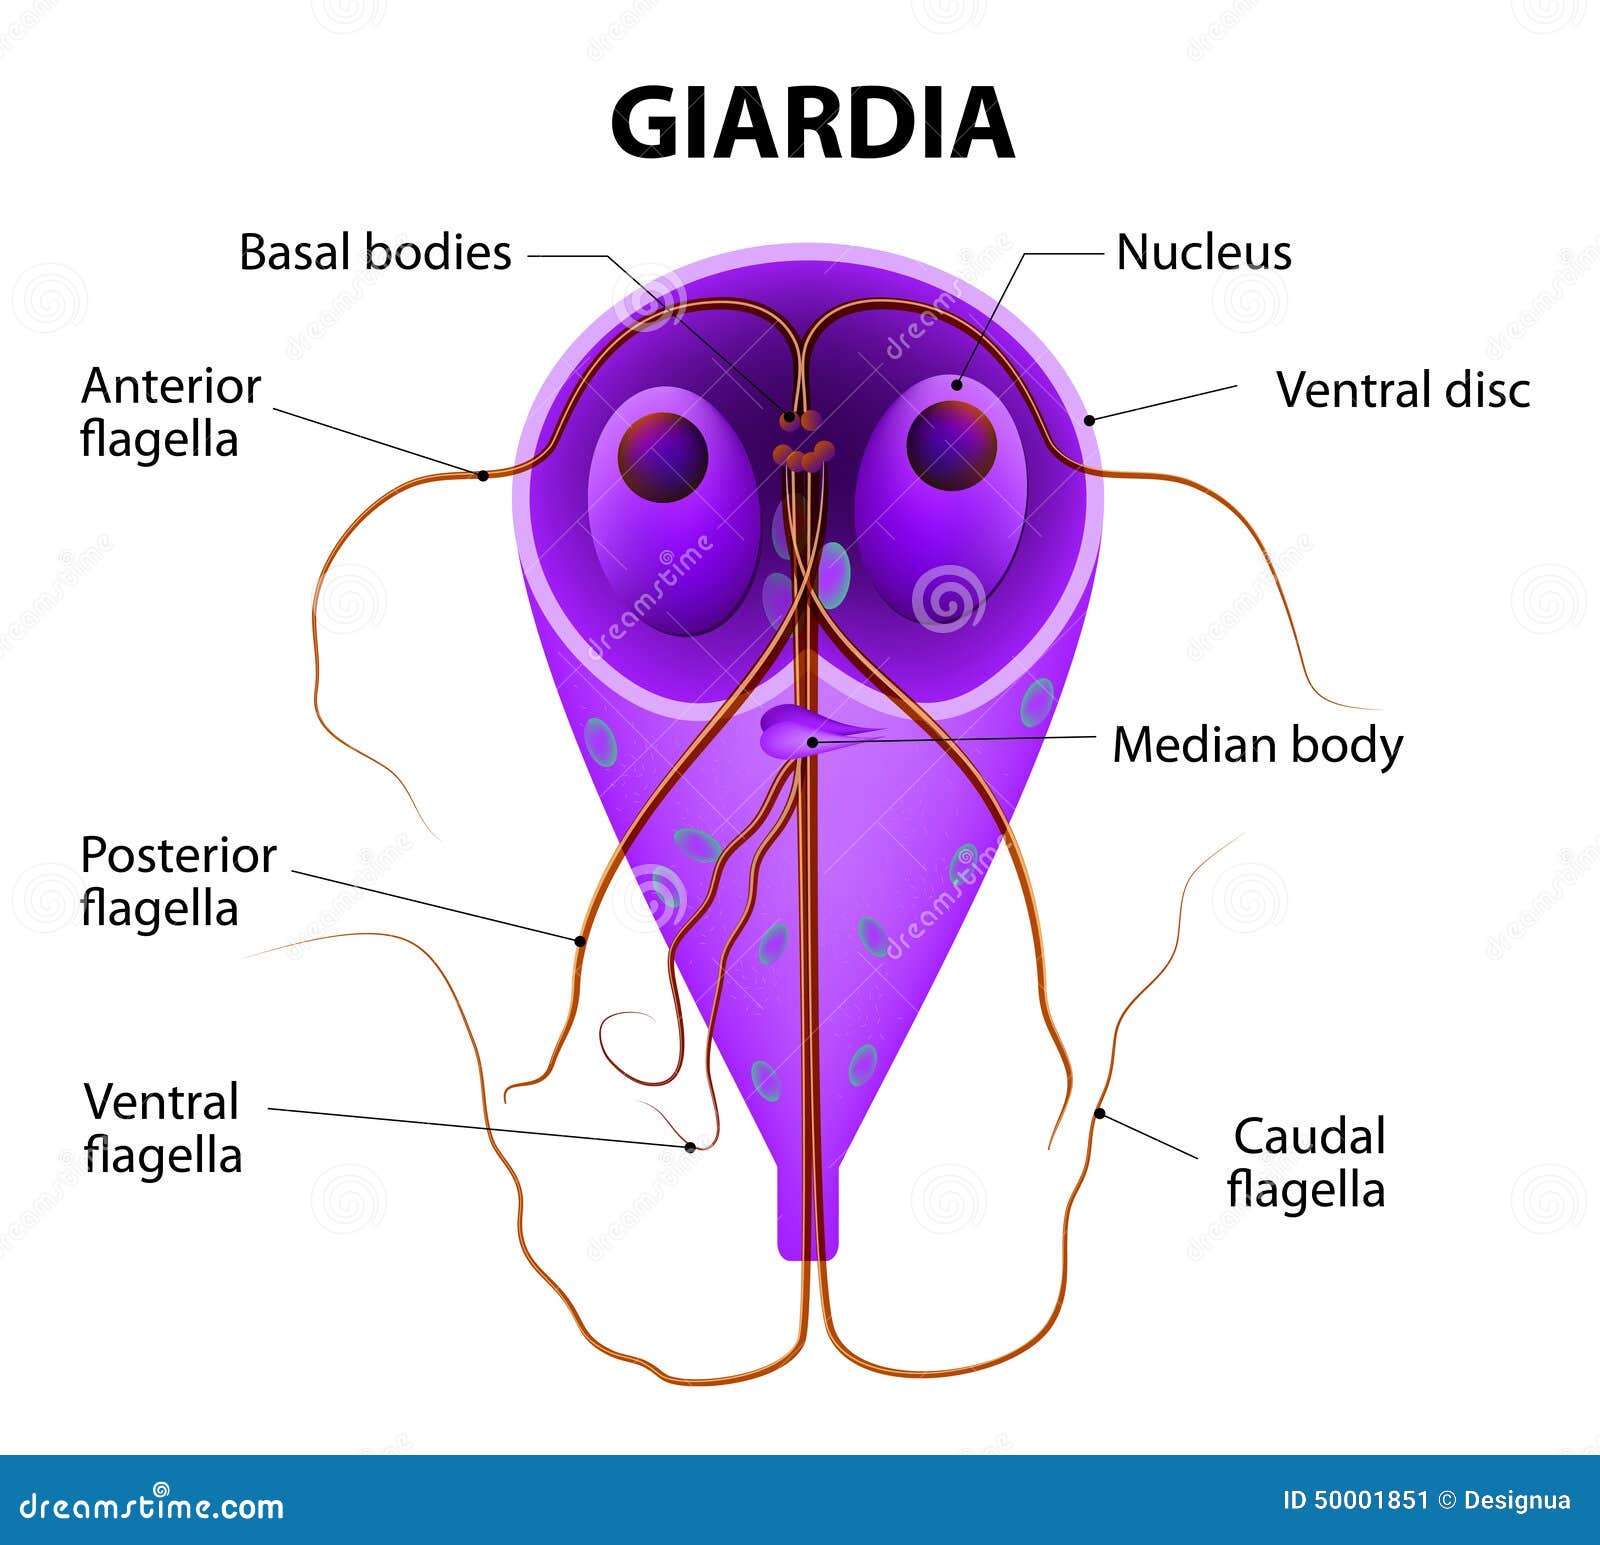 giardia intestinalis antigens nedir)